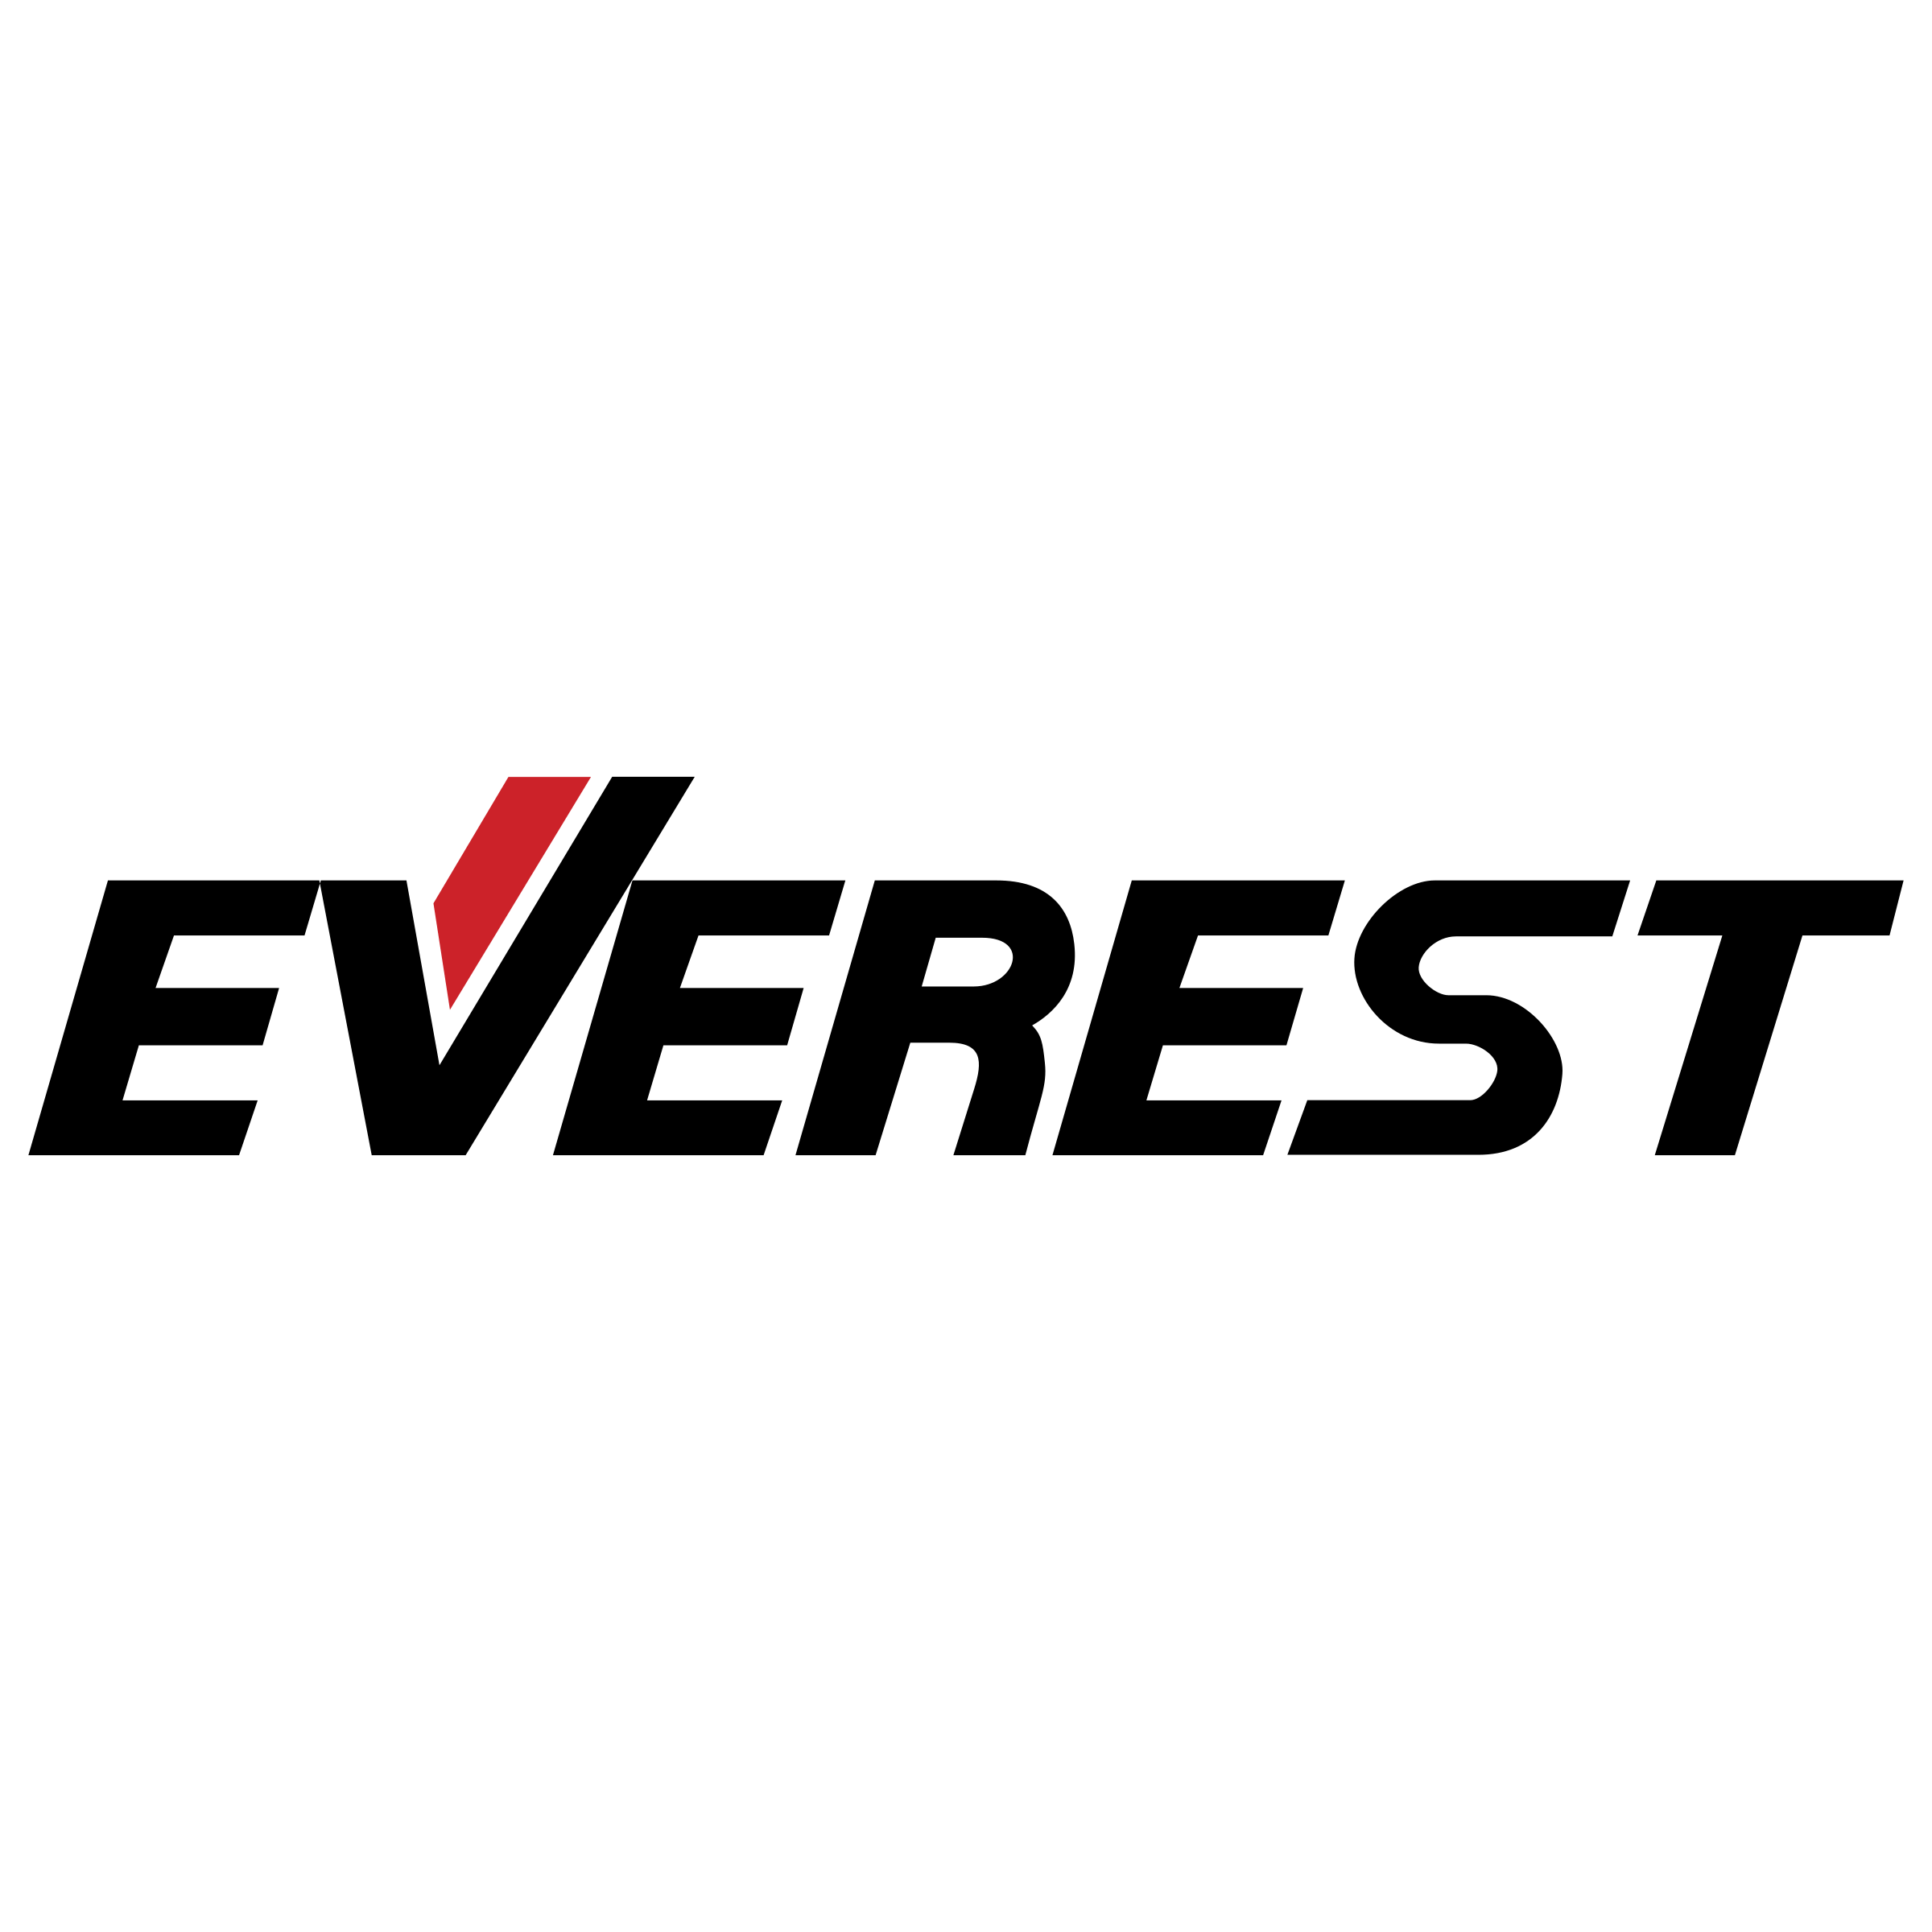 Everest Logo - Everest Logo PNG Transparent & SVG Vector